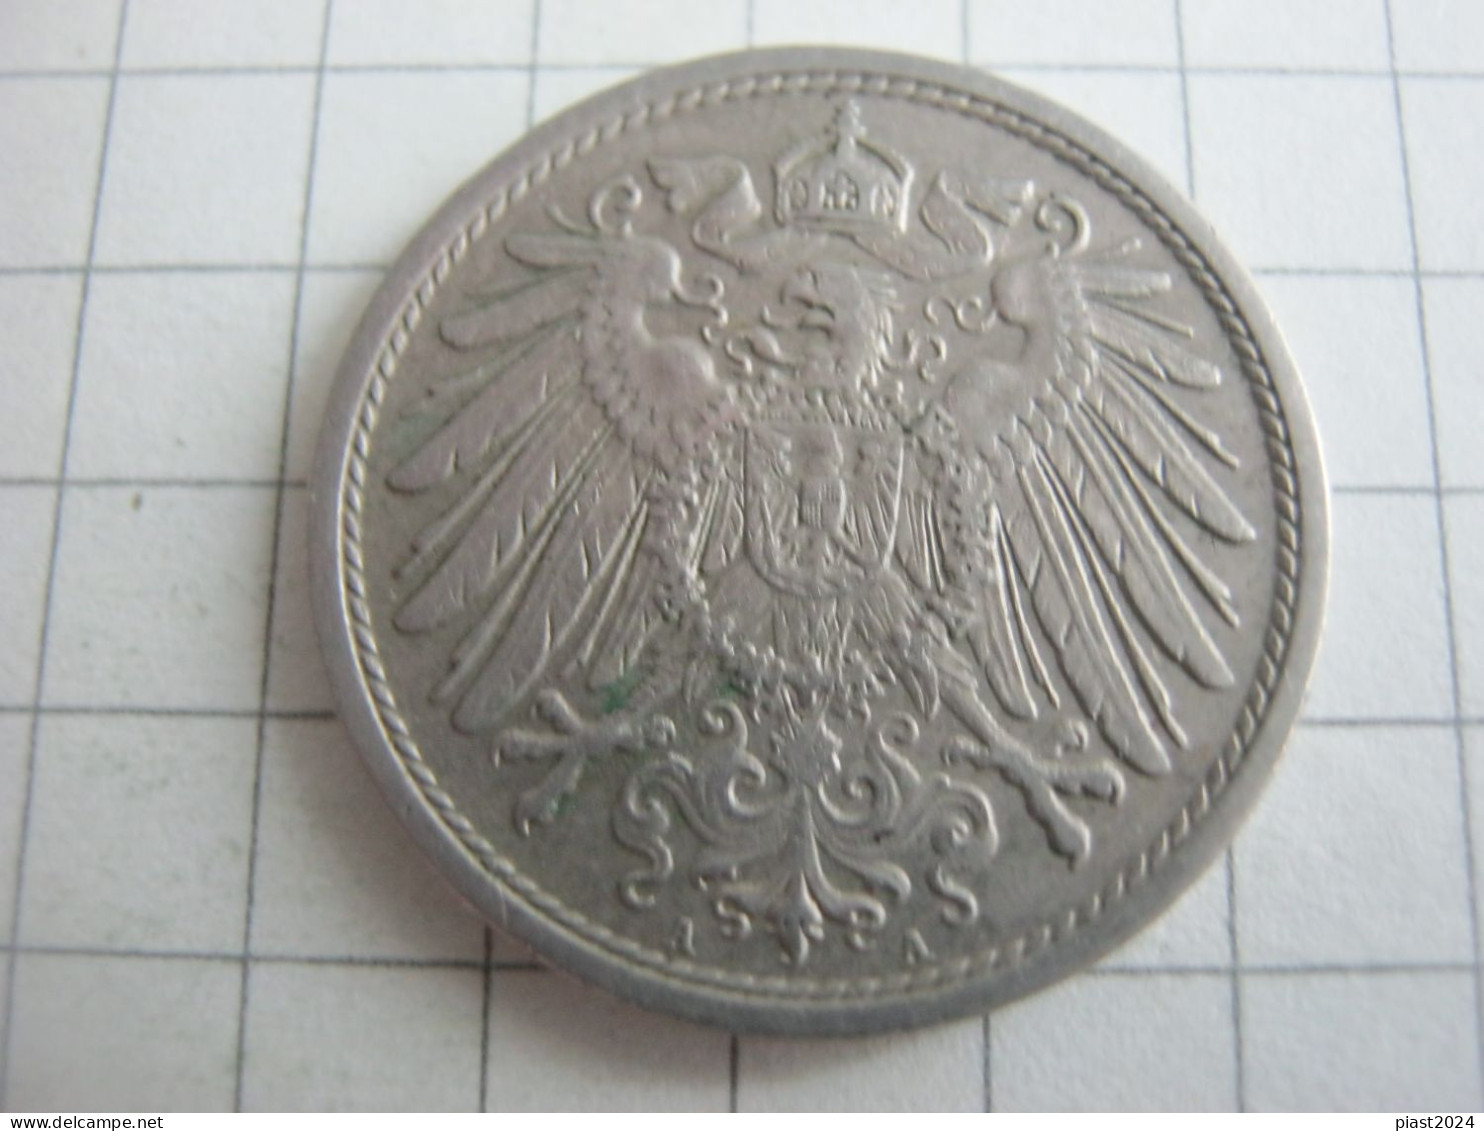 Germany 10 Pfennig 1907 A - 10 Pfennig